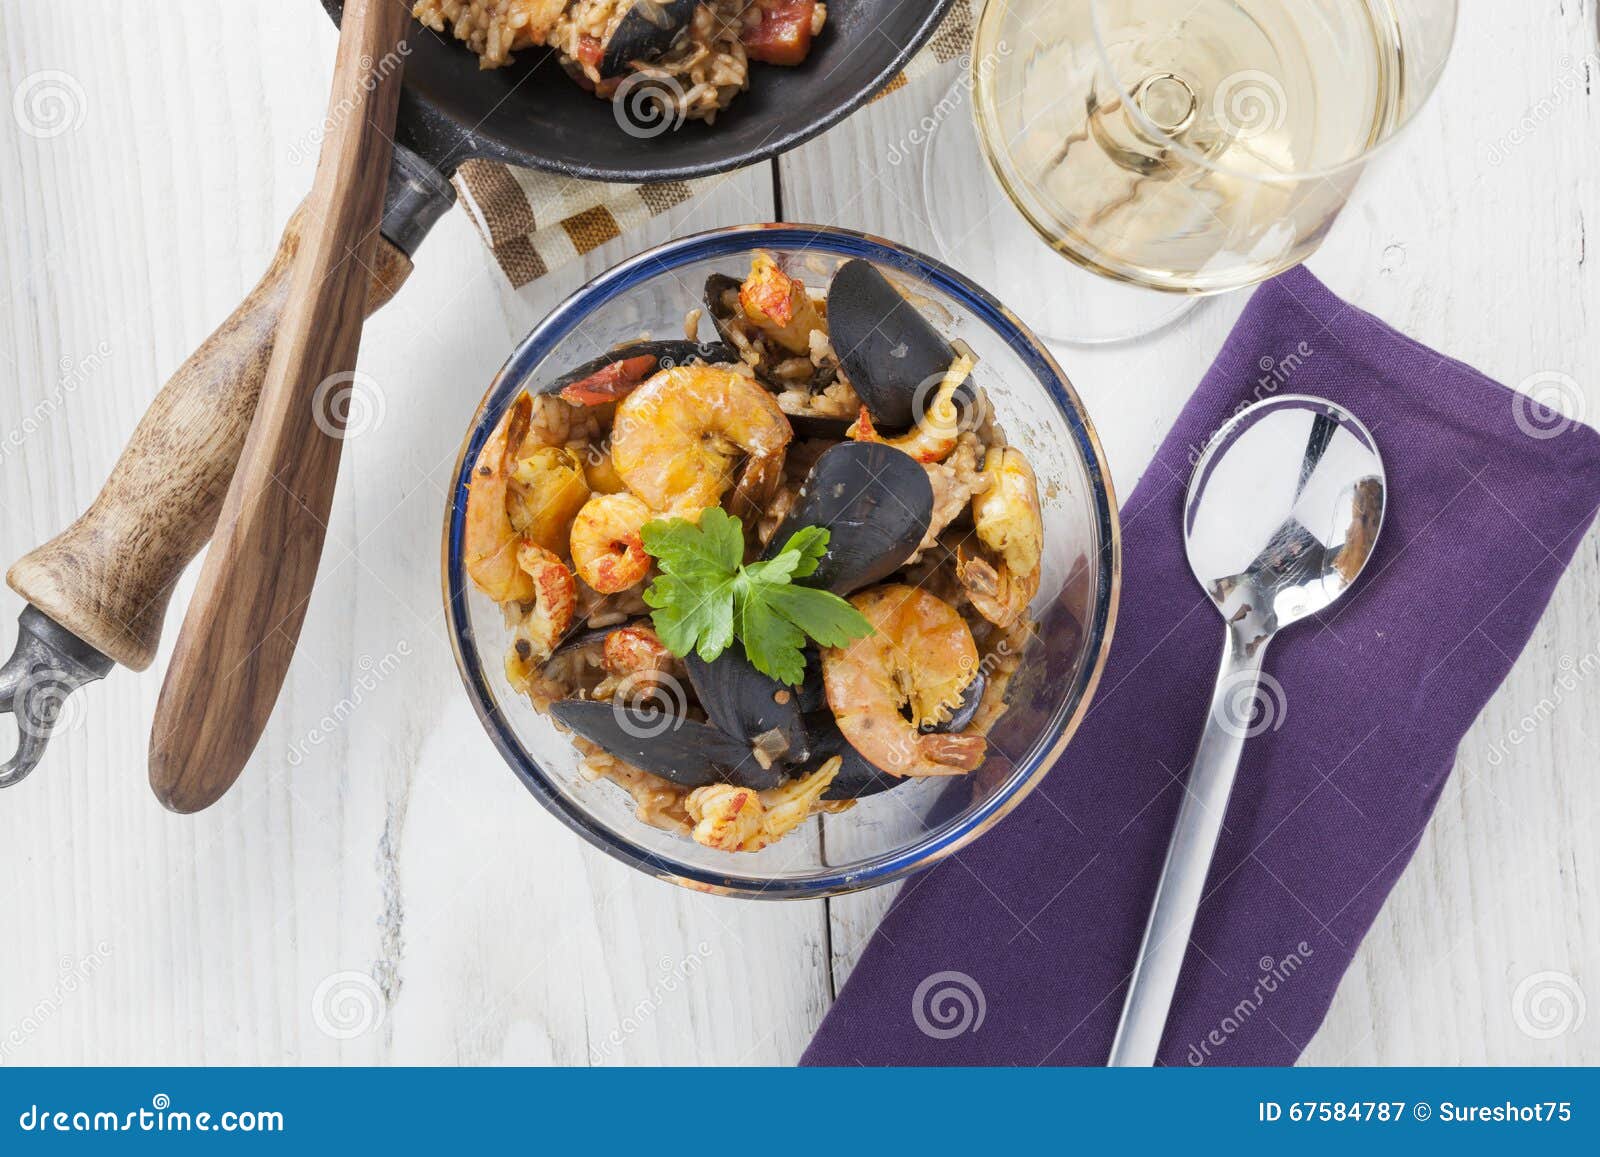 arroz de marisco portugese paella seafood dish